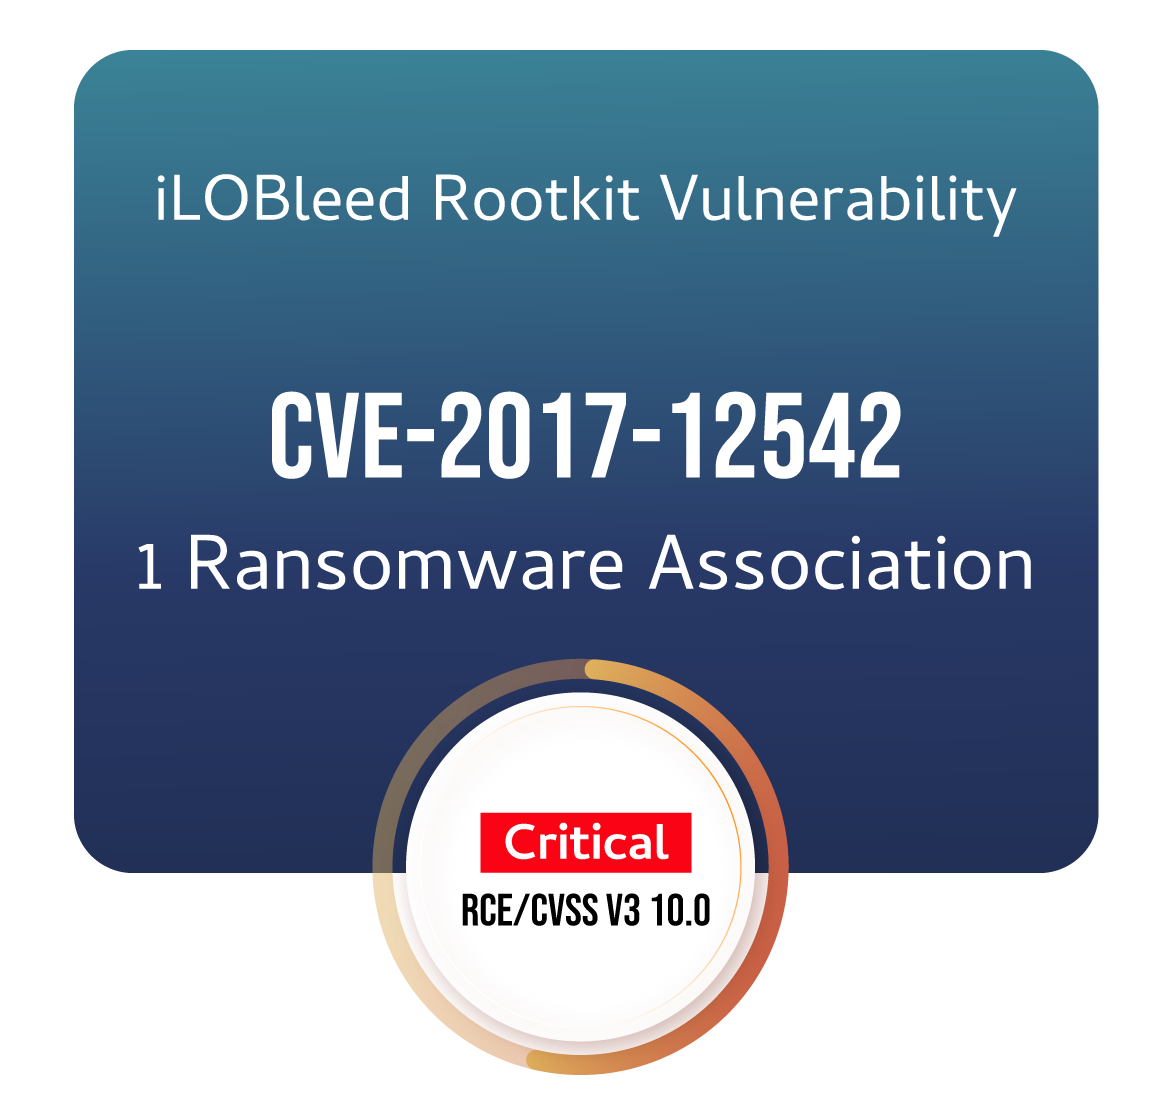 iLOBleed Rootkit Vulnerability